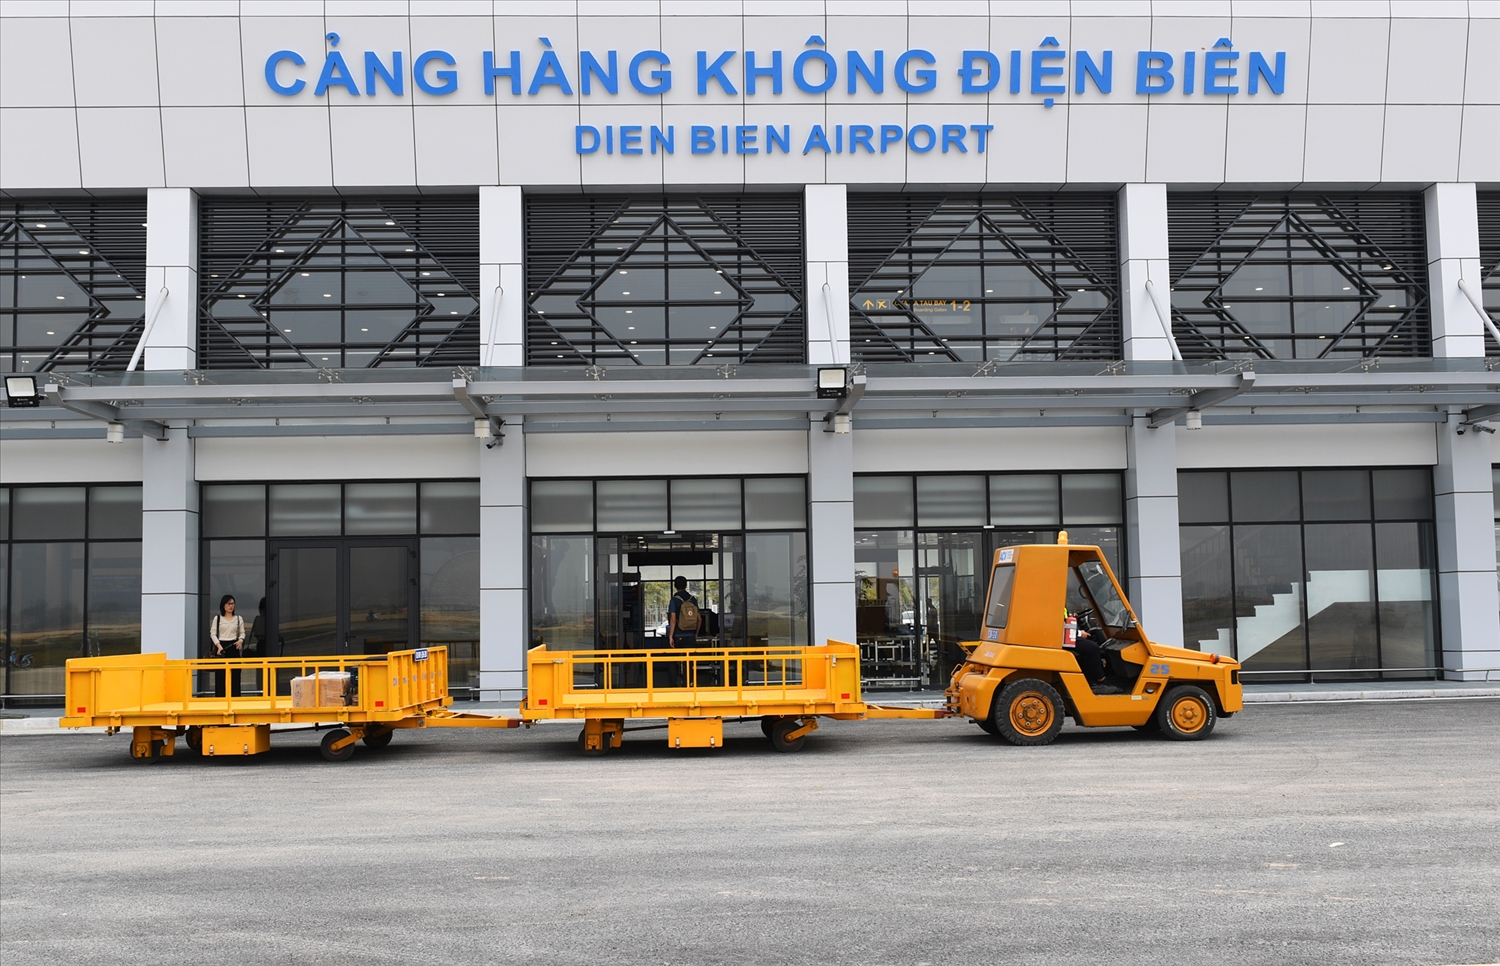 Sân bay duy nhất ở tây bắc Việt Nam sẵn sàng đón chuyến bay đầu tiên sau nâng cấp. 1